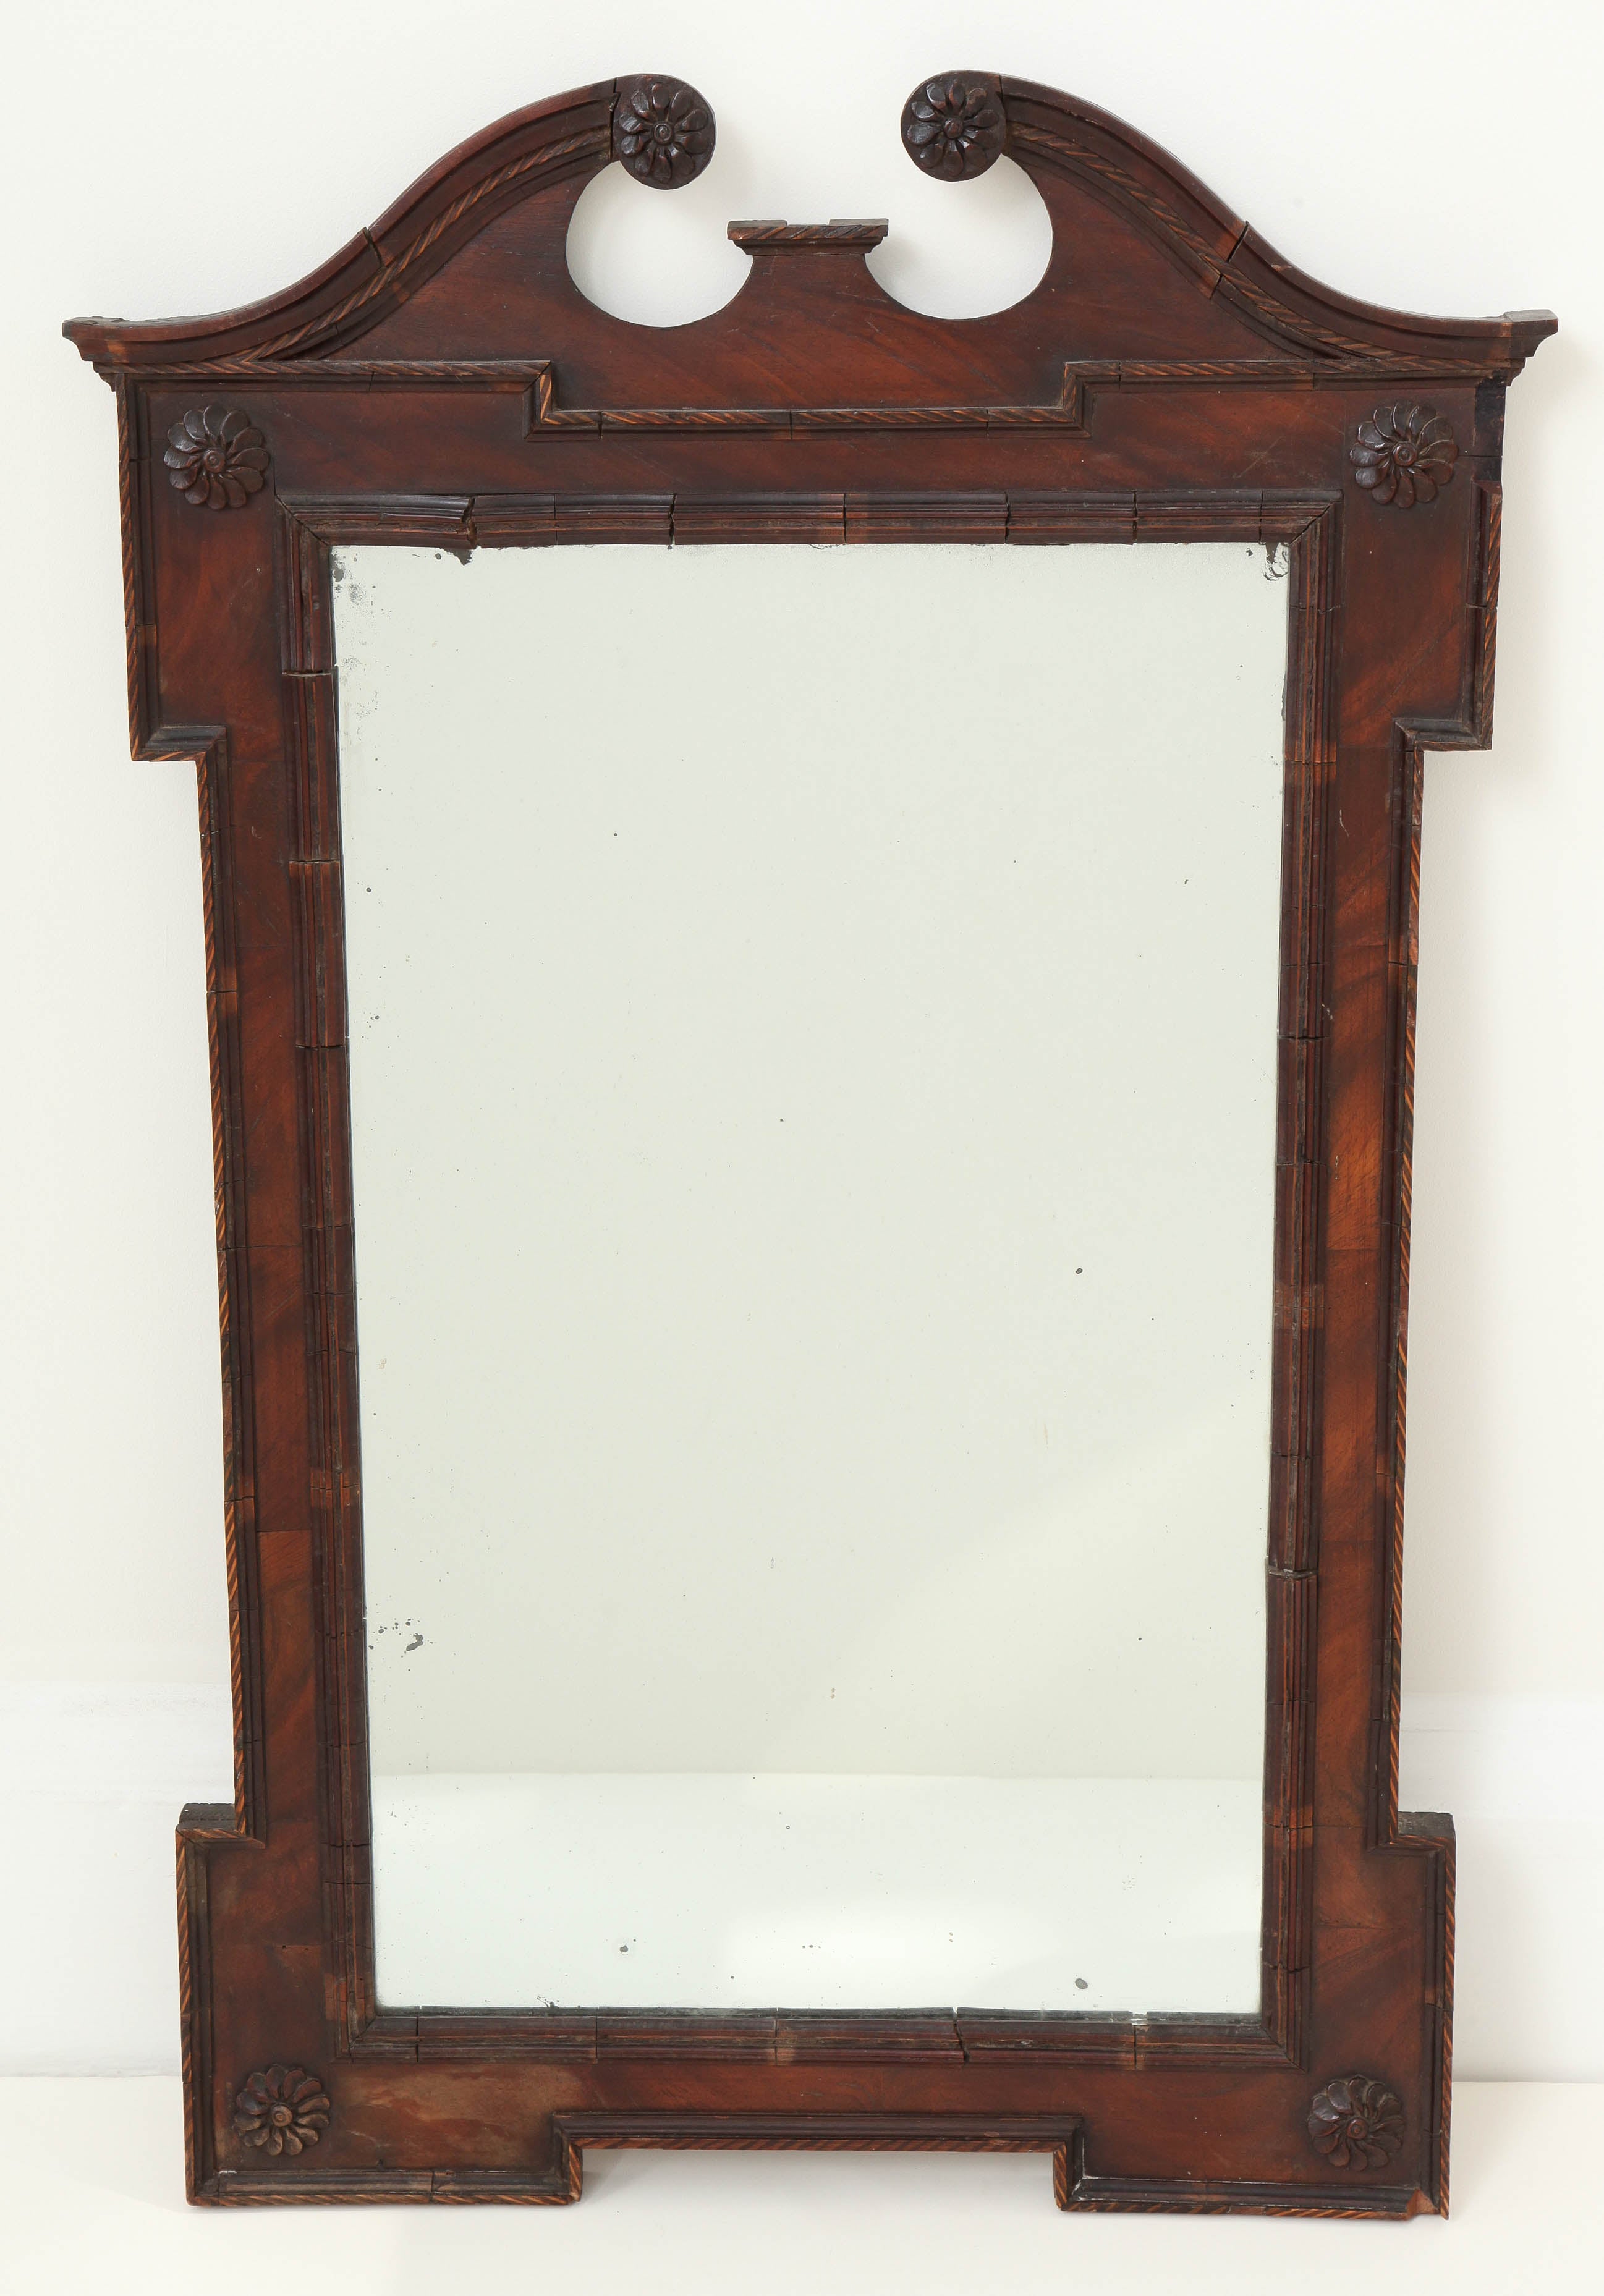 18th Century English Mahogany Mirror